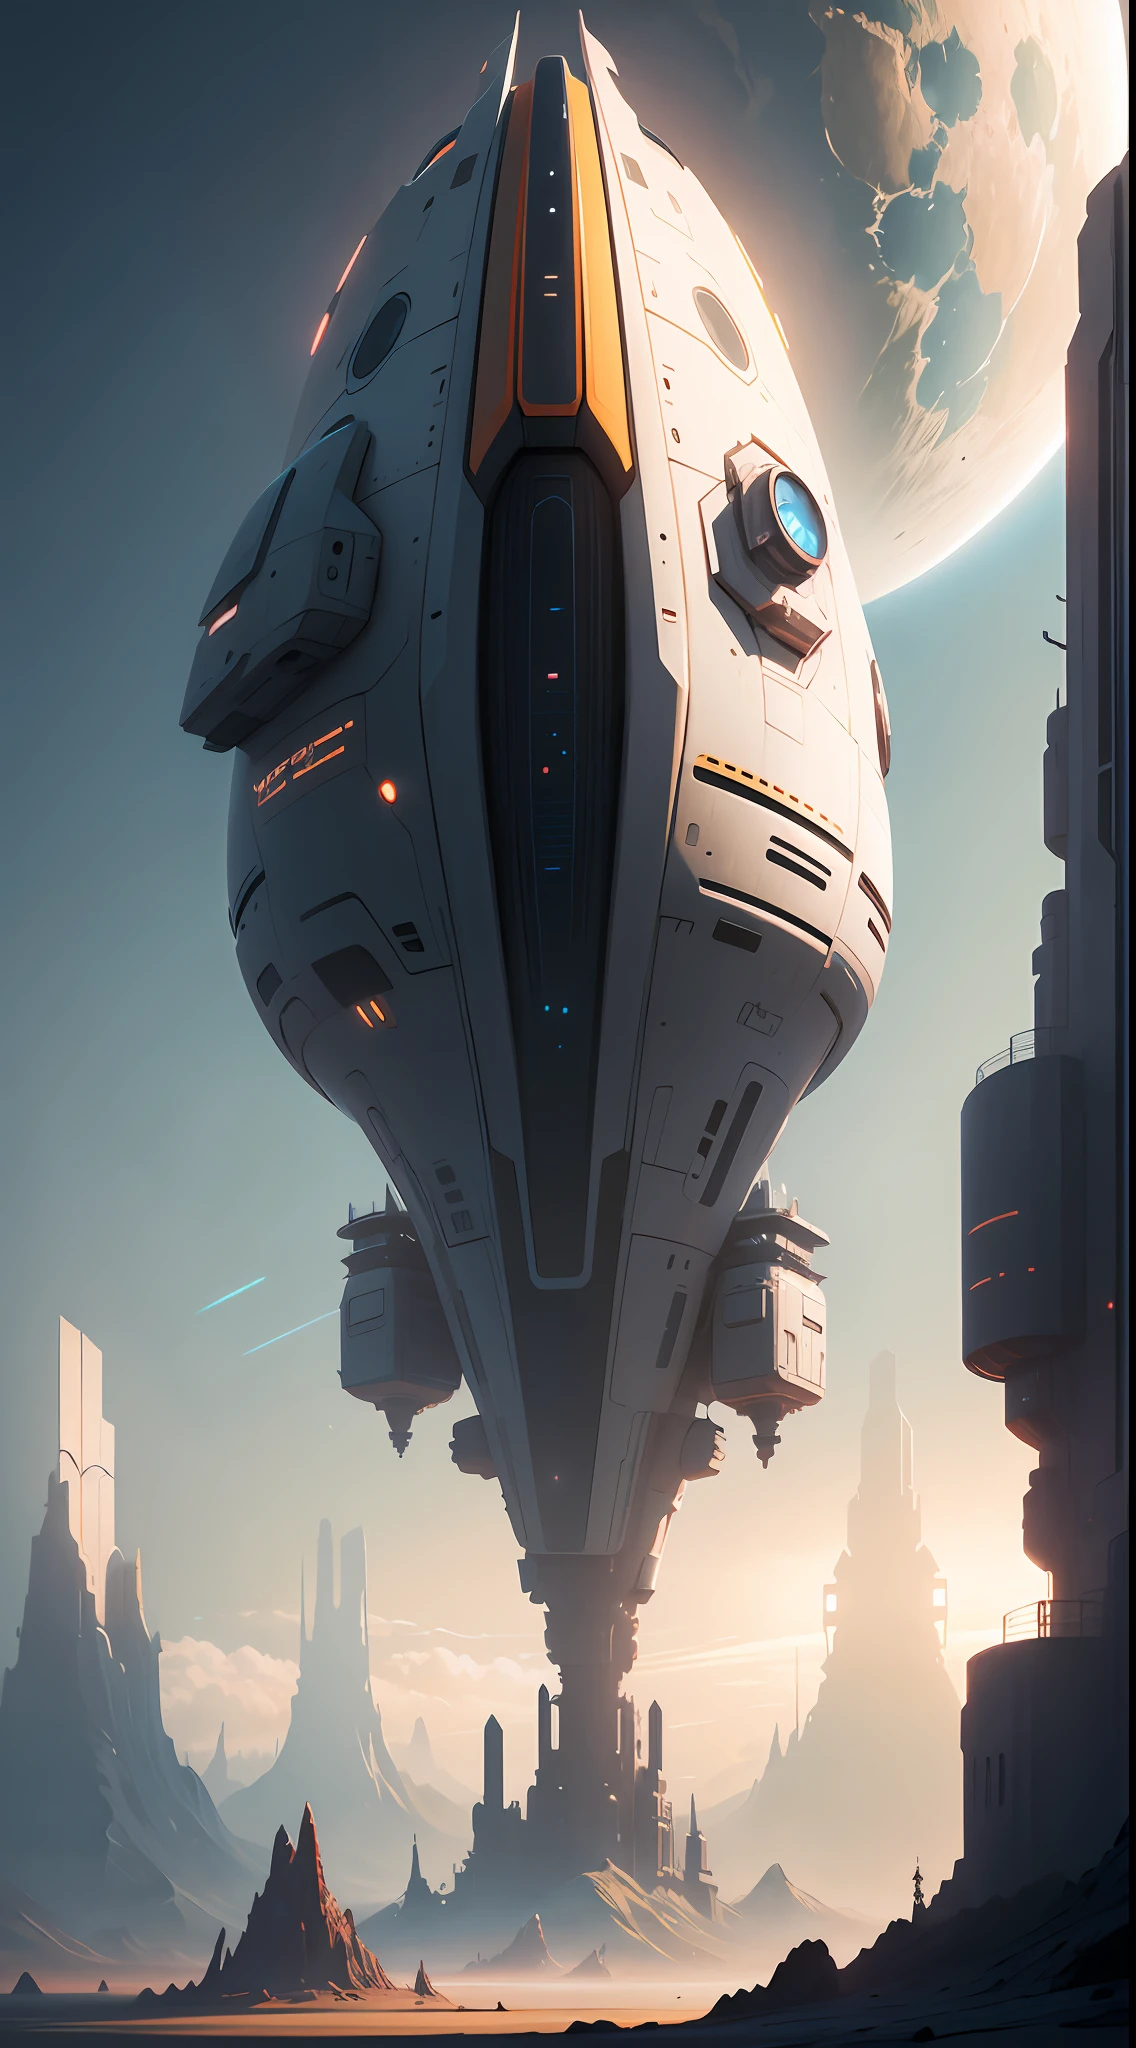 uma nave espacial futurista flutuando no céu, uma pintura fosca de Christopher Balaskas, sociedade cg, arte espacial, Toonami, sci-fi, reimaginado pela luz industrial e magia